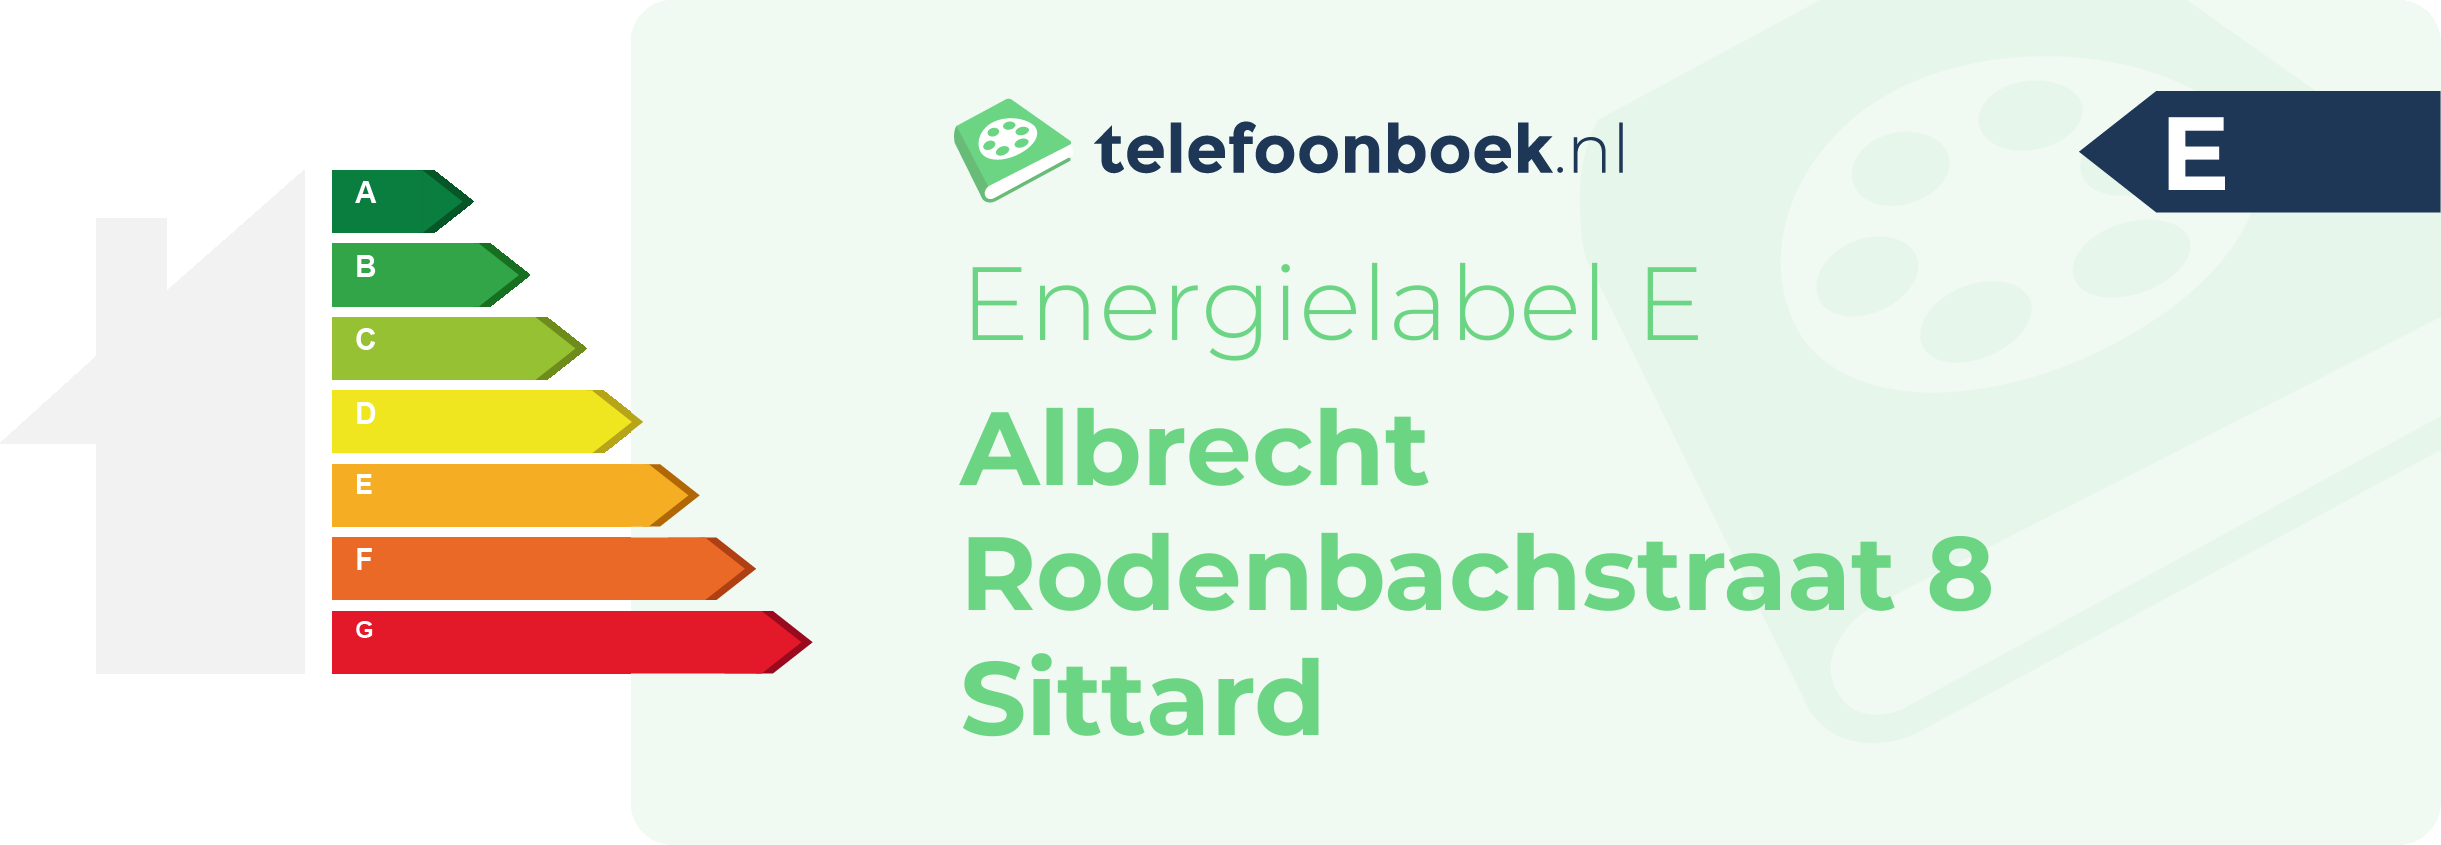 Energielabel Albrecht Rodenbachstraat 8 Sittard